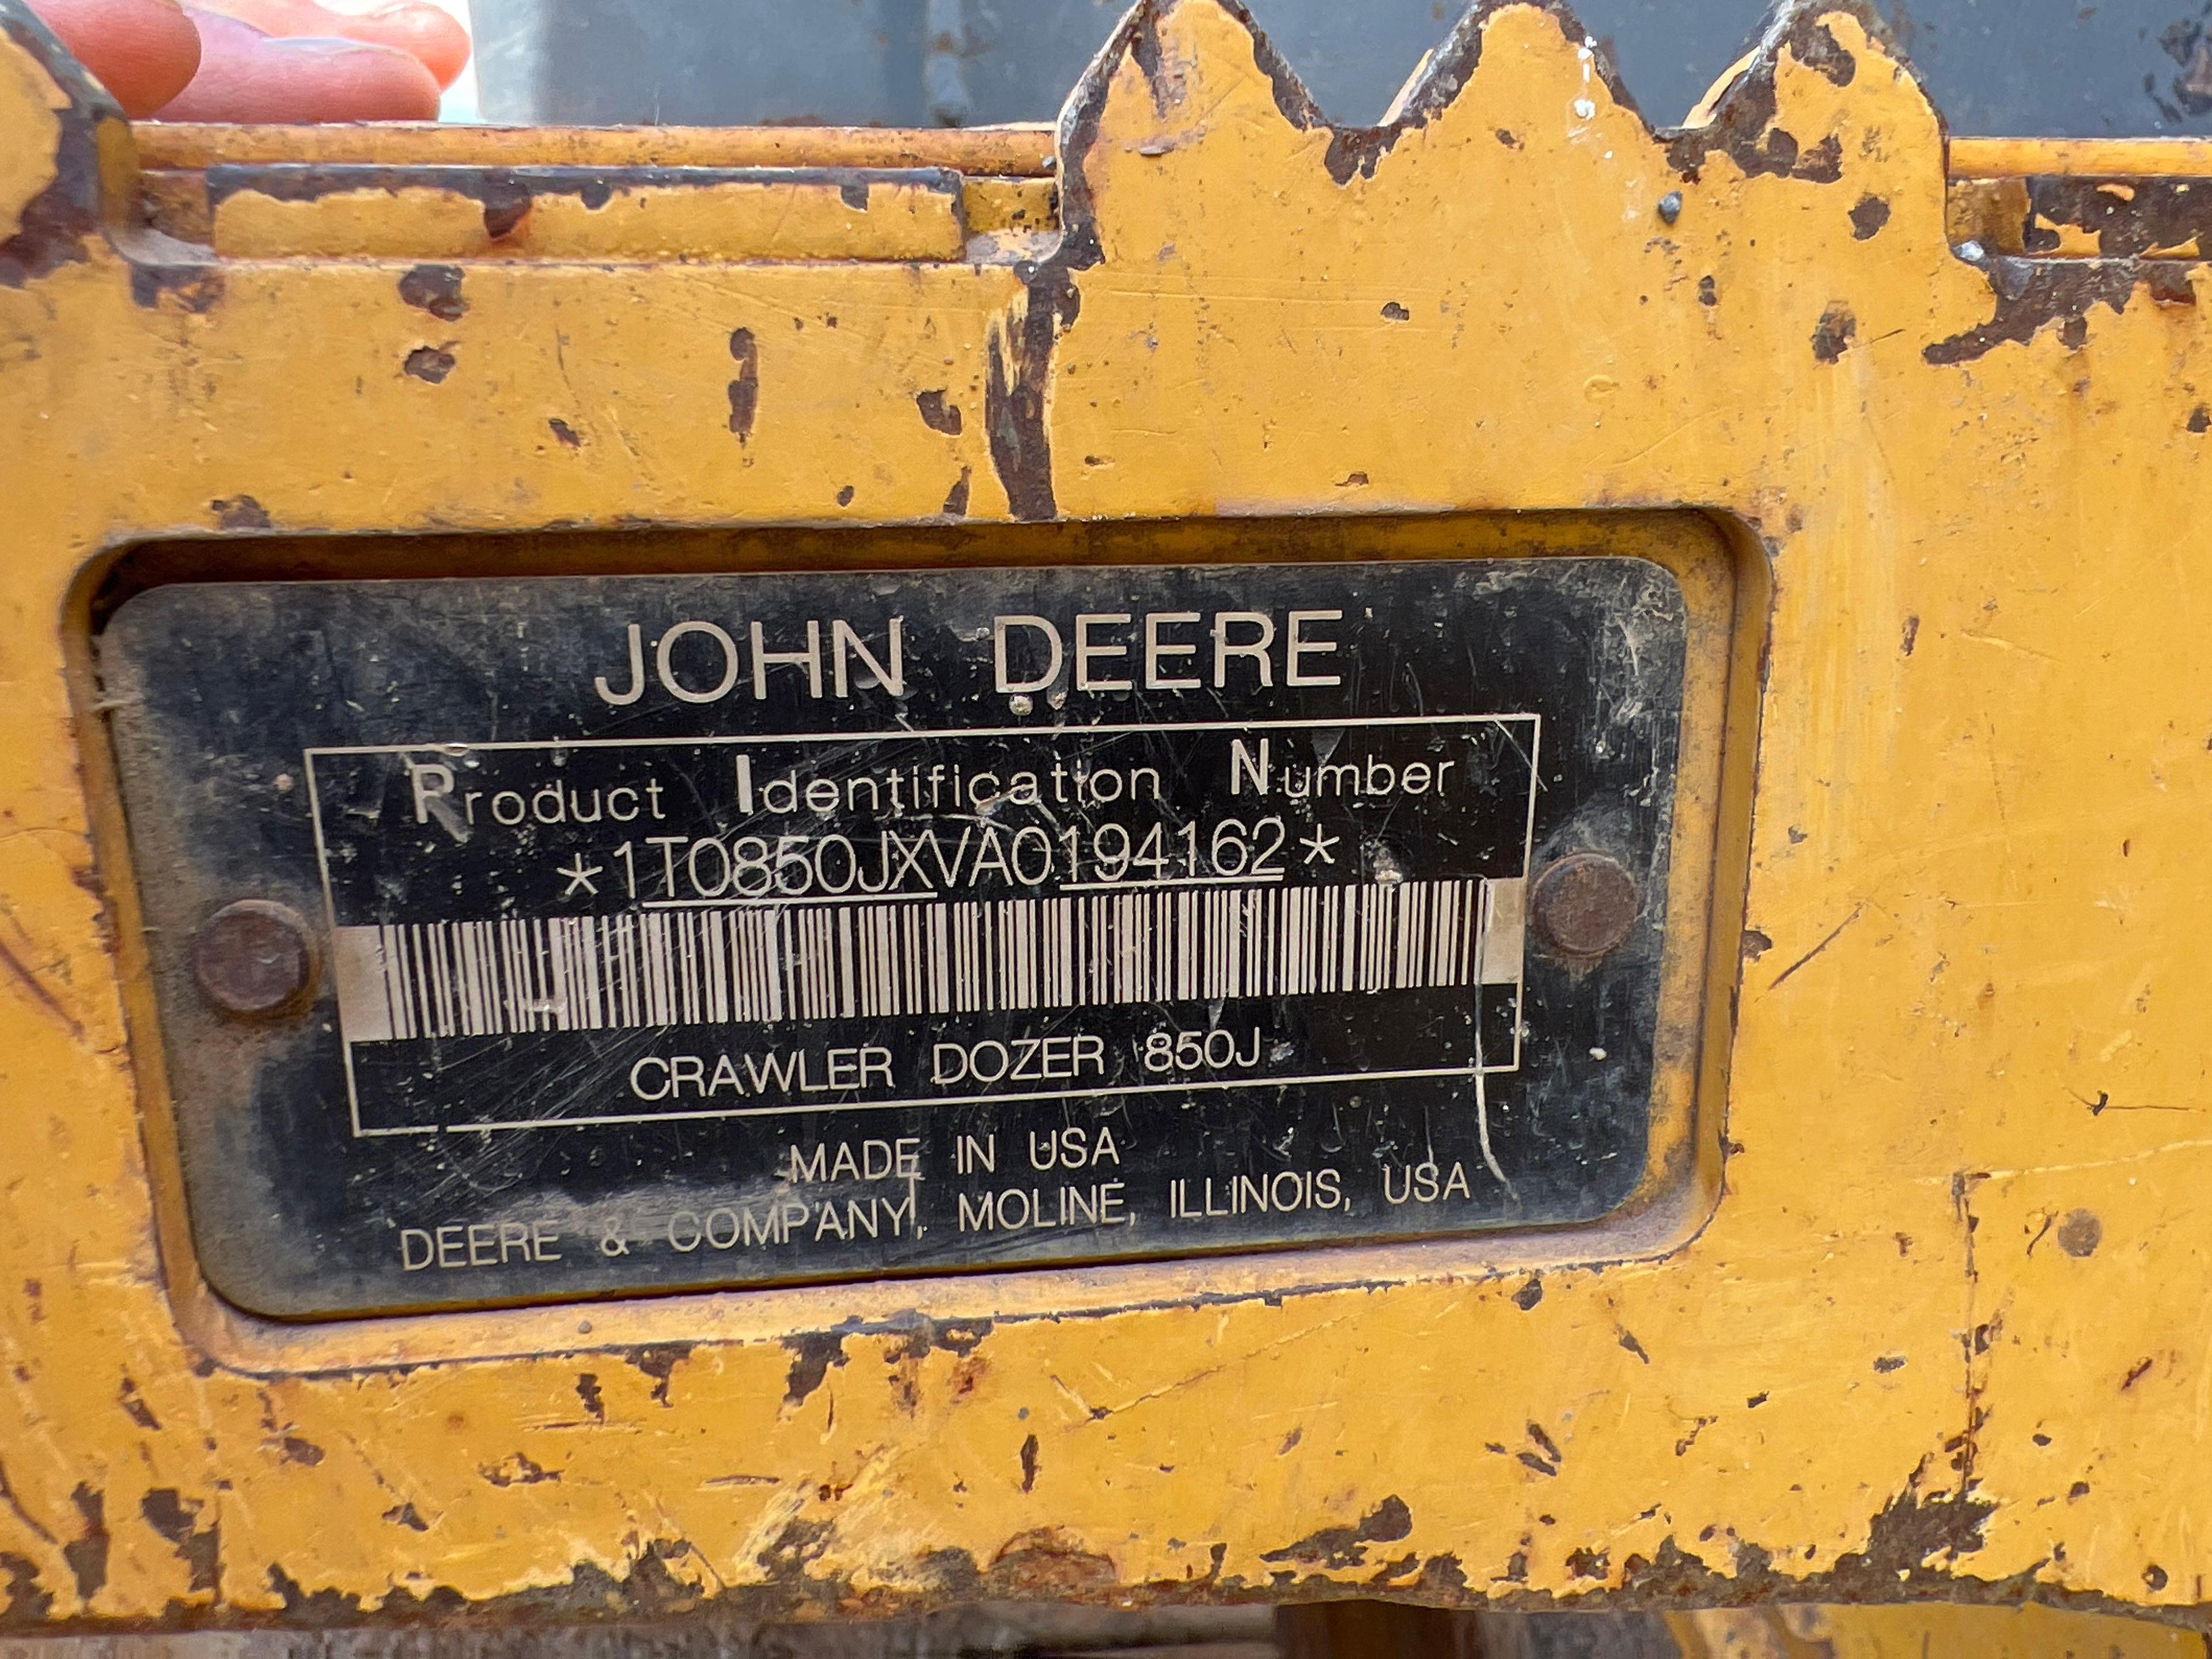 2011 JOHN DEERE 850J CRAWLER TRACTOR SN:1T0850JXVA0194162 powered by John Deere diesel engine,